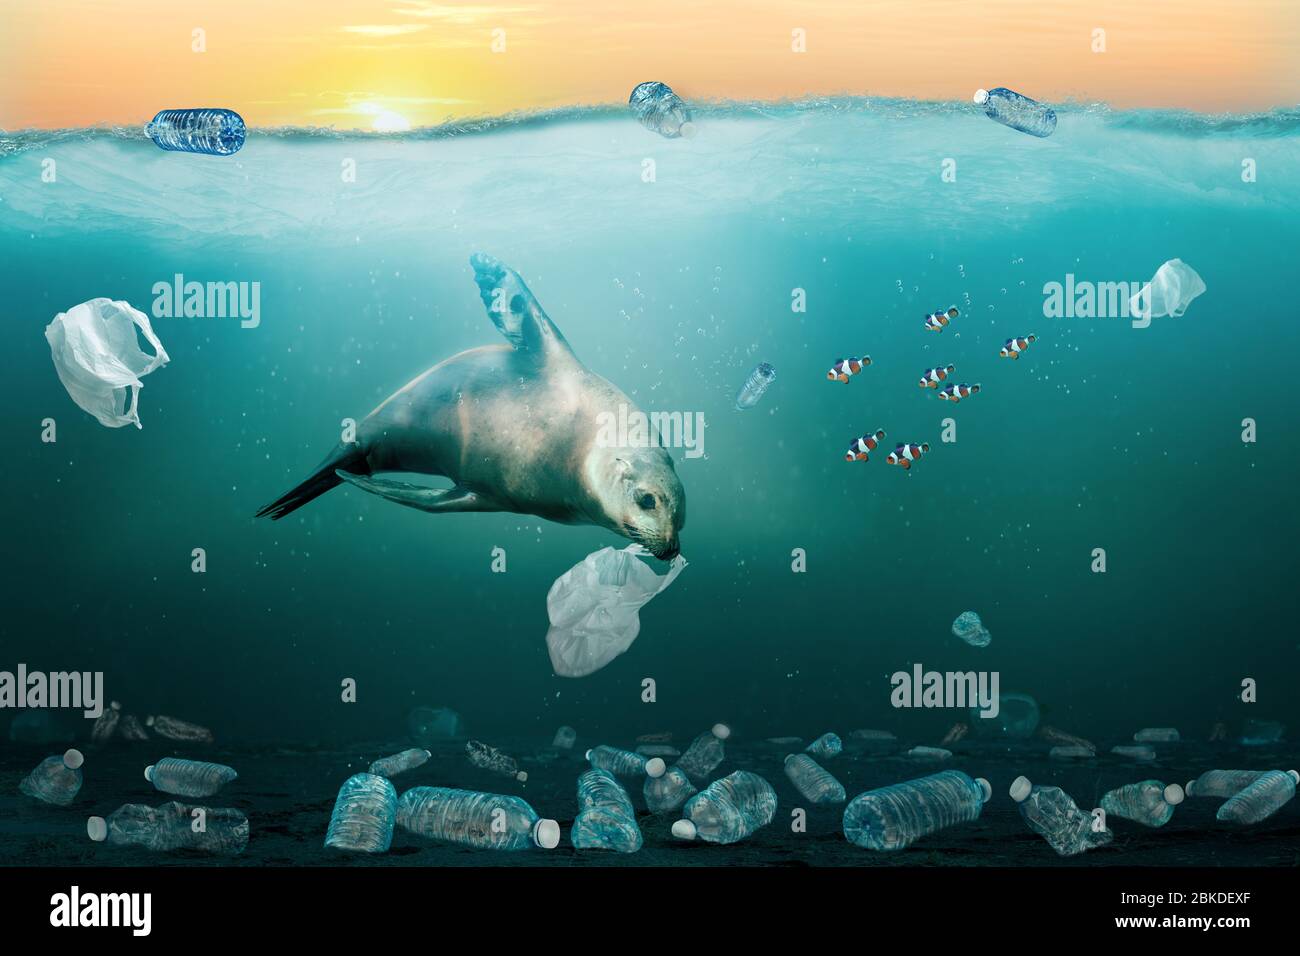 Le lion de mer mangeant le sac poubelle dans l'océan plein de déchets en plastique pour illustrer le problème de pollution marine. Au moins 8 millions de tonnes de plastique se trouvent dans les océans e Banque D'Images